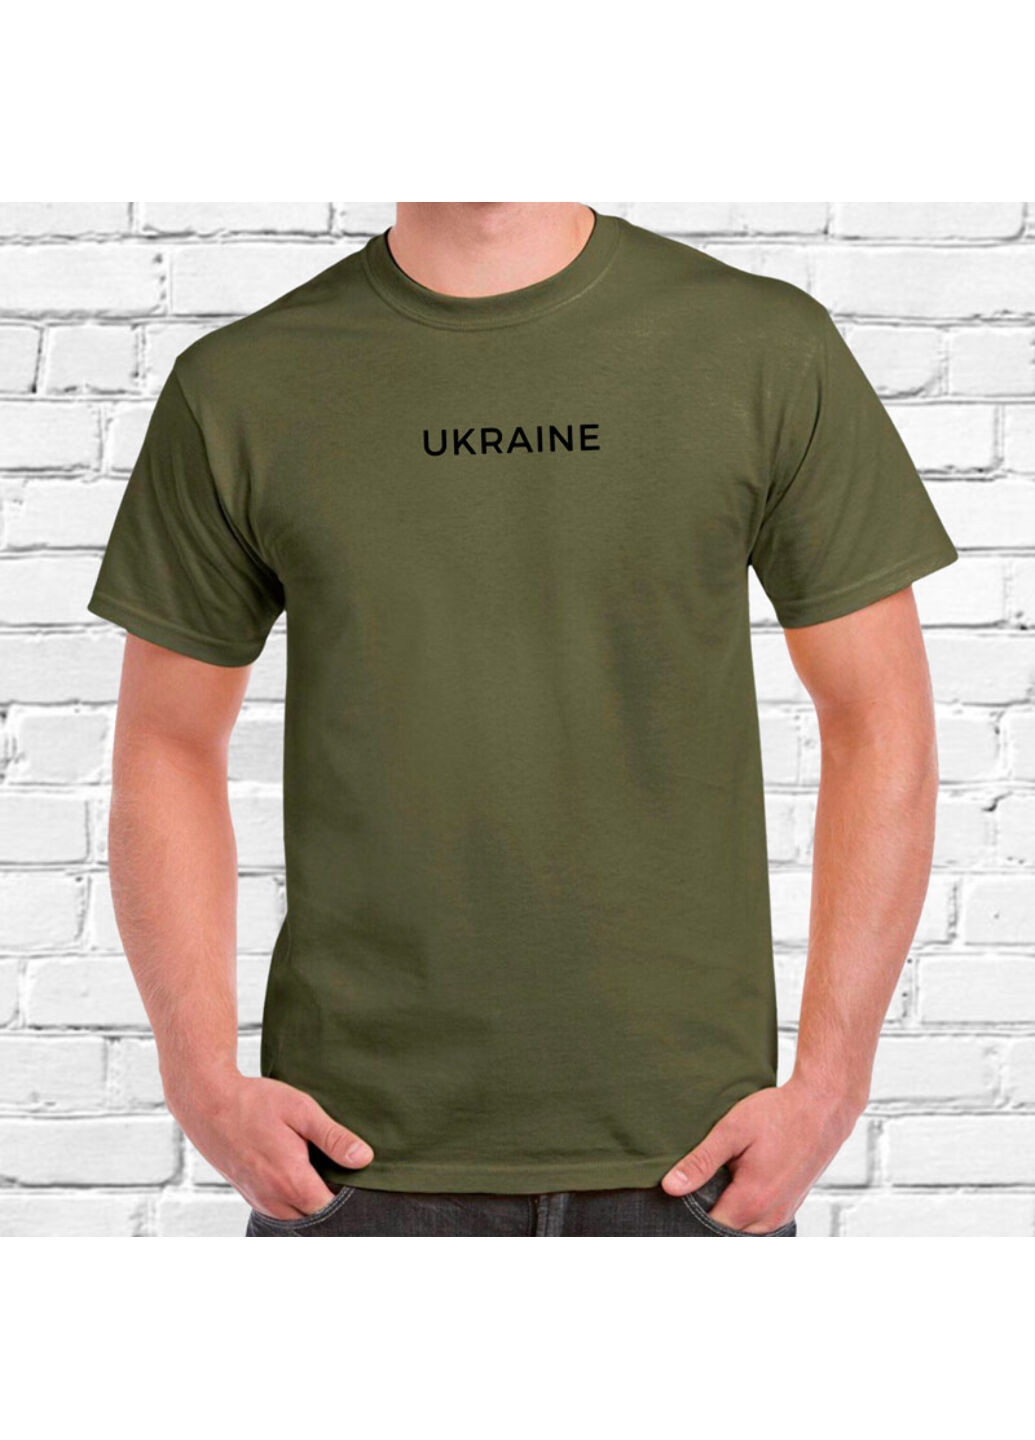 Хакі (оливкова) футболка з вишивкою ukraine чоловіча millytary green xl No Brand